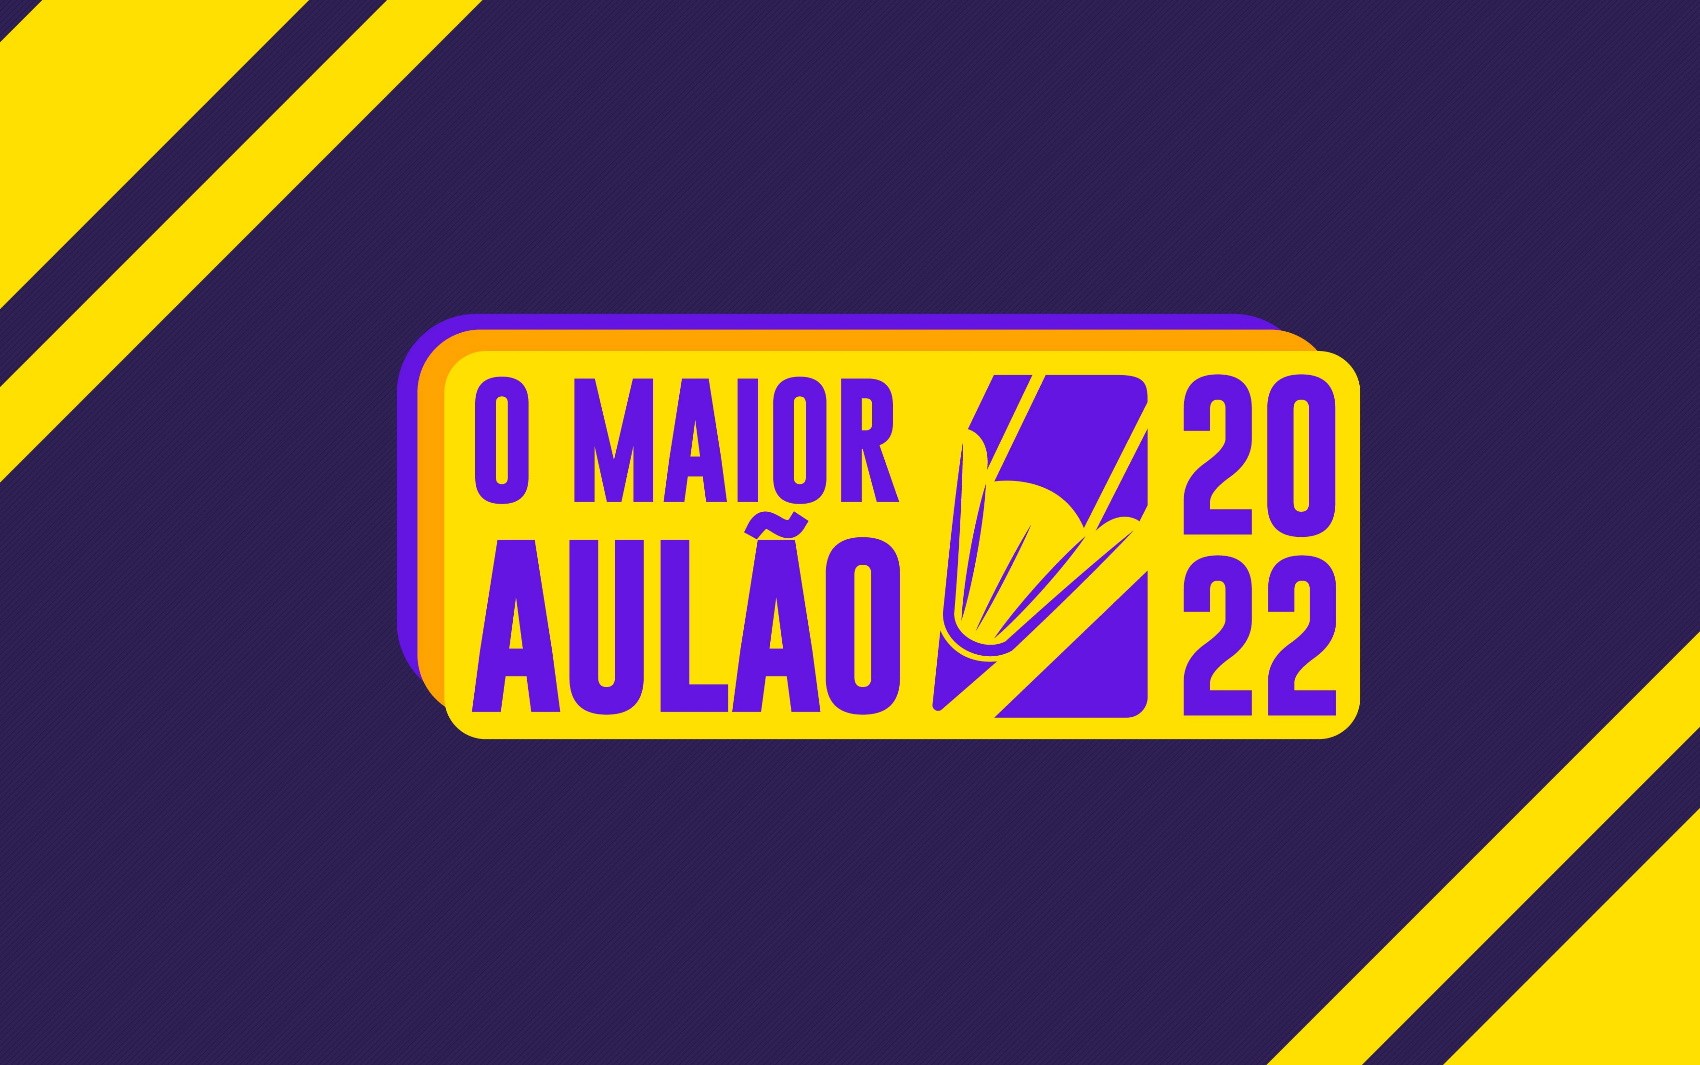 Maior Aulão de Goiás encerra inscrições para assistir presencialmente às aulas; veja como receber e-book e simulado